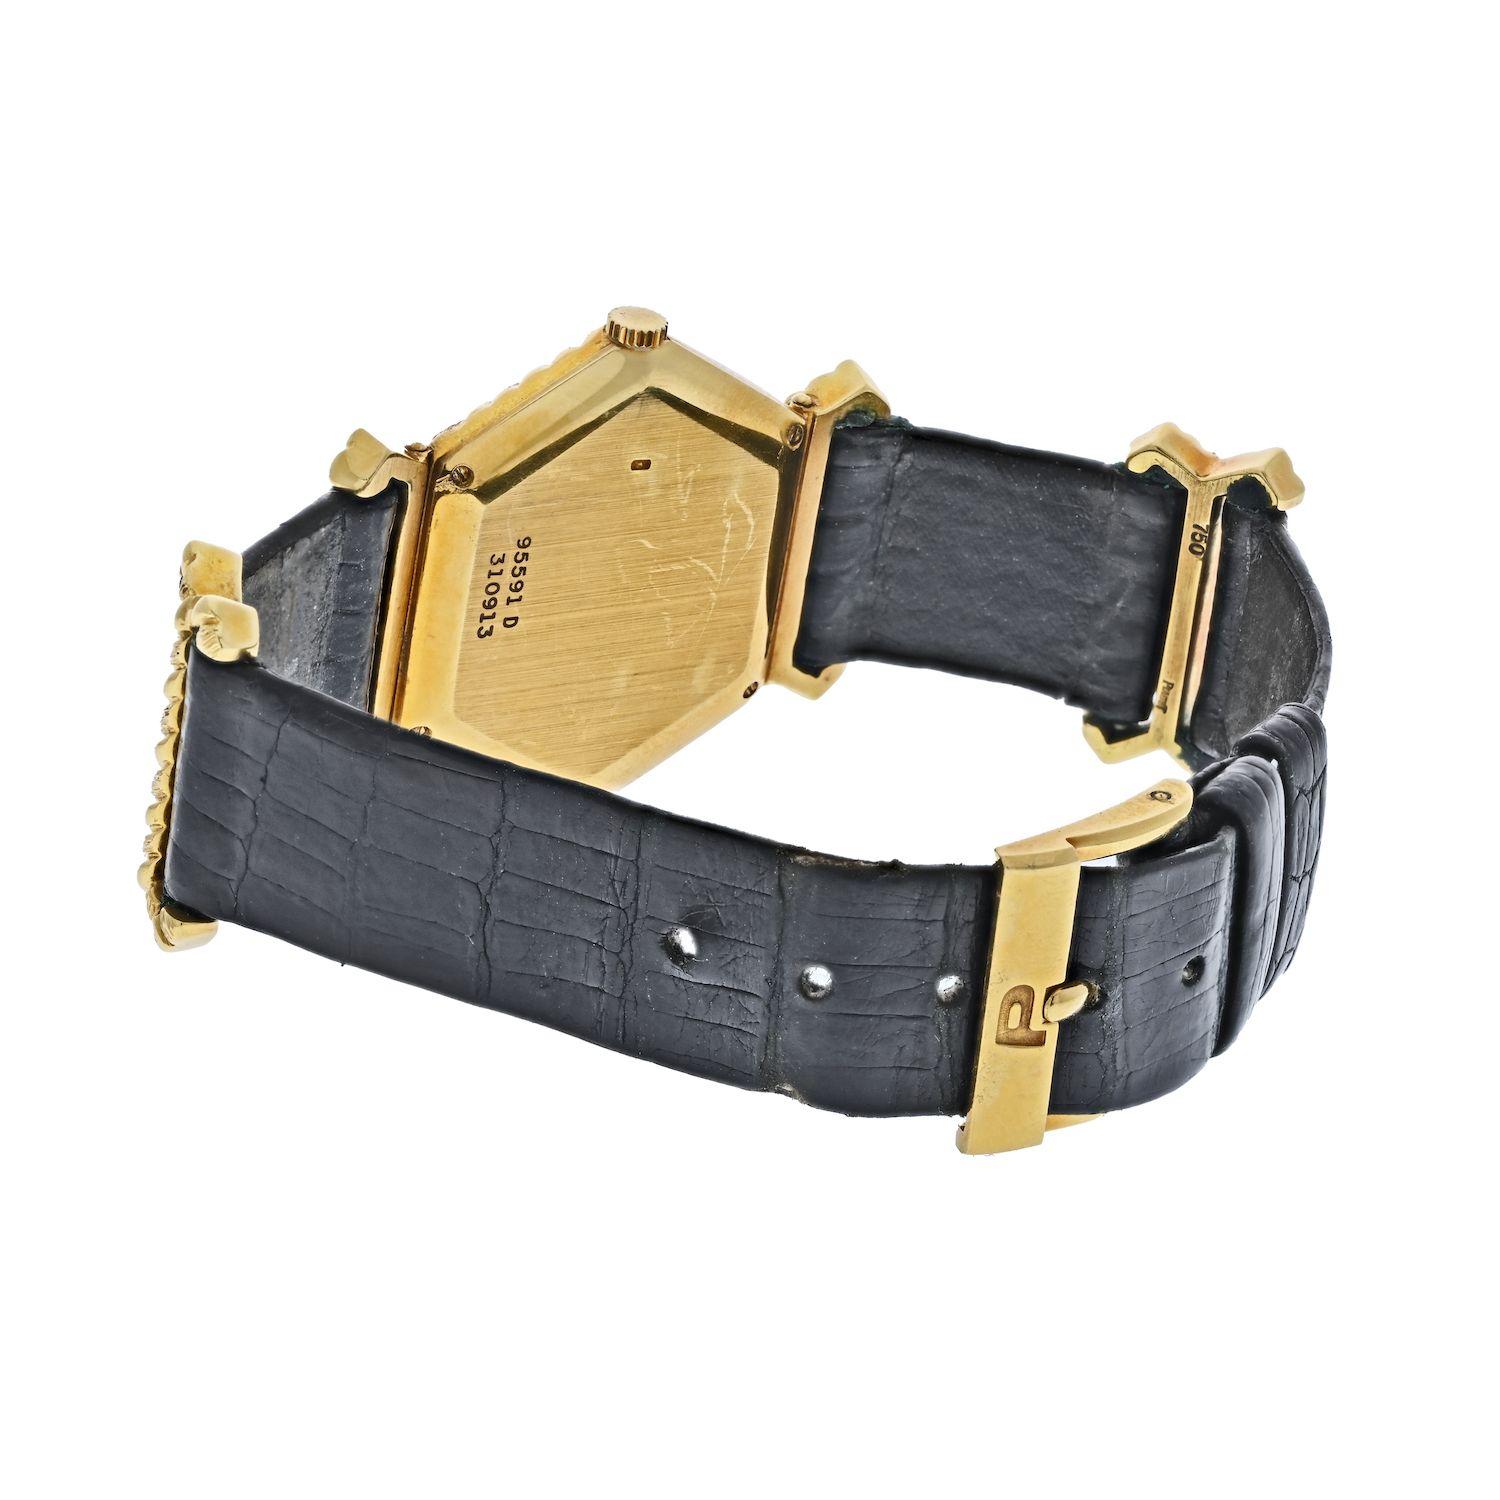 Hergestellt von Piaget ca. 1970 in 18K Gelbgold ist dies eine 95591 D Armbanduhr. Perfektes Vintage-Accessoire für alle, die auf die Retro-Ära, klare Linien und Schlichtheit stehen. Mit sechseckigem Zifferblatt und Seilmuster aus 18 Karat Gelbgold